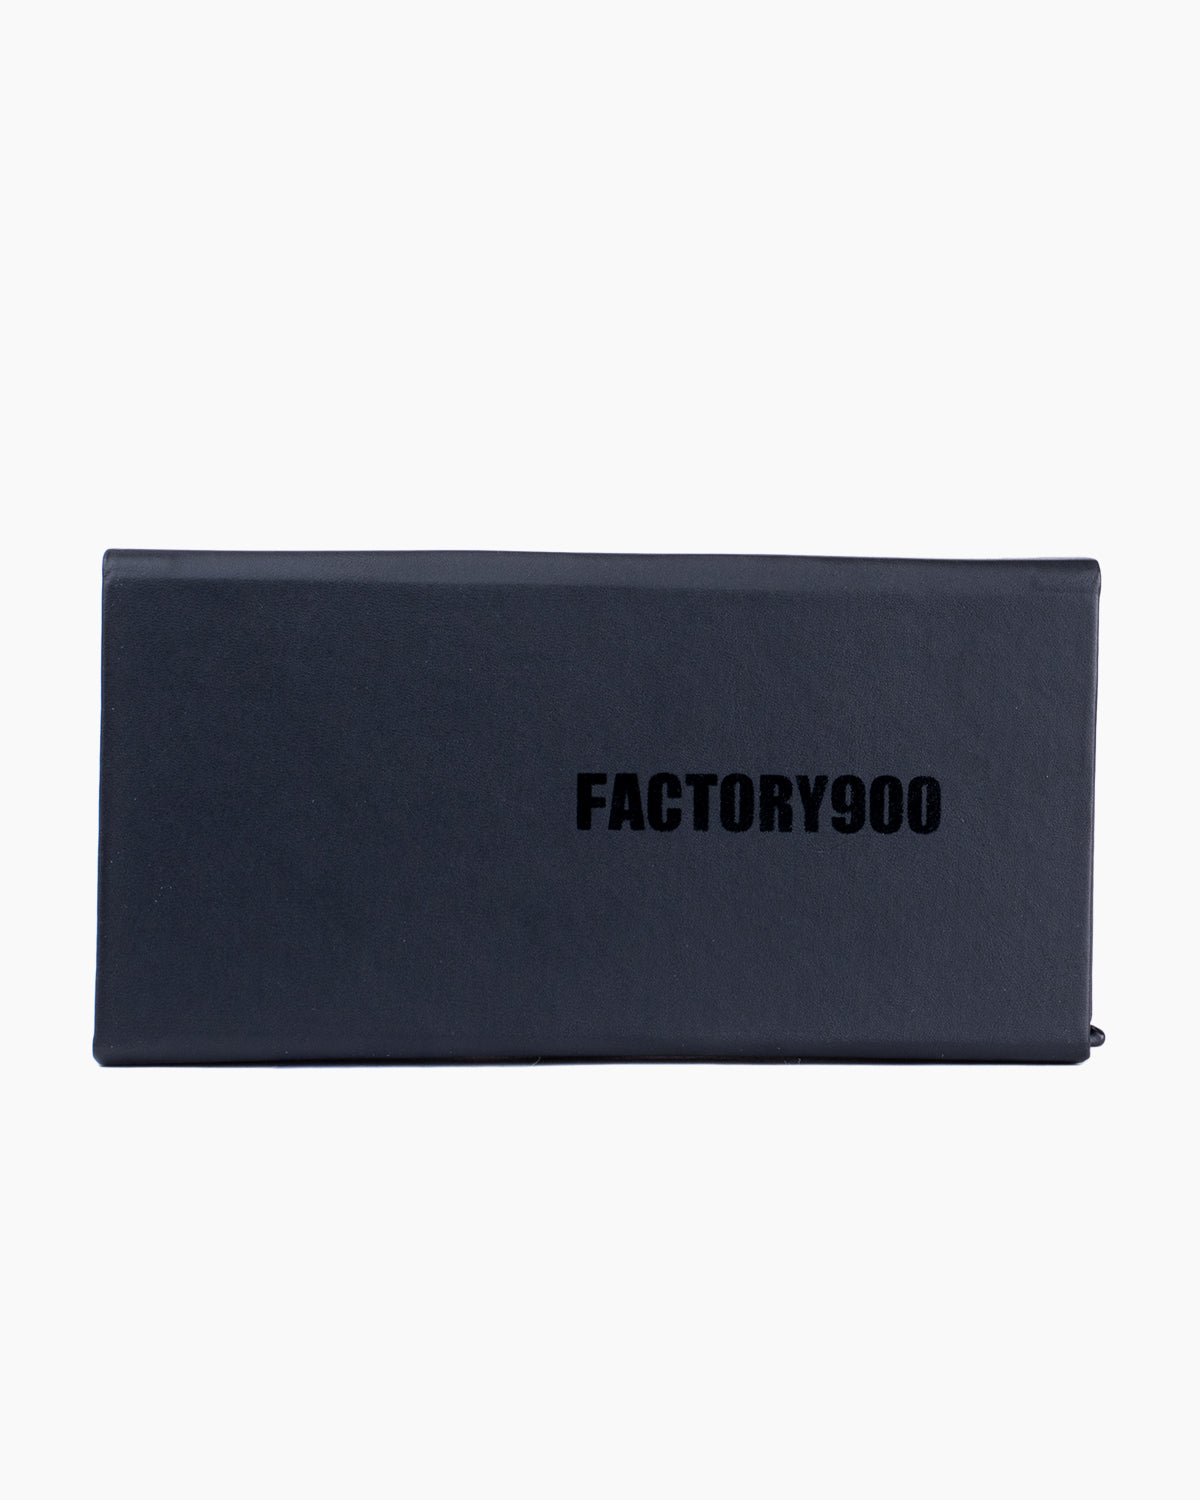 Factory 900 - MF001 - 03 | Bar à lunettes:  Marie-Sophie Dion